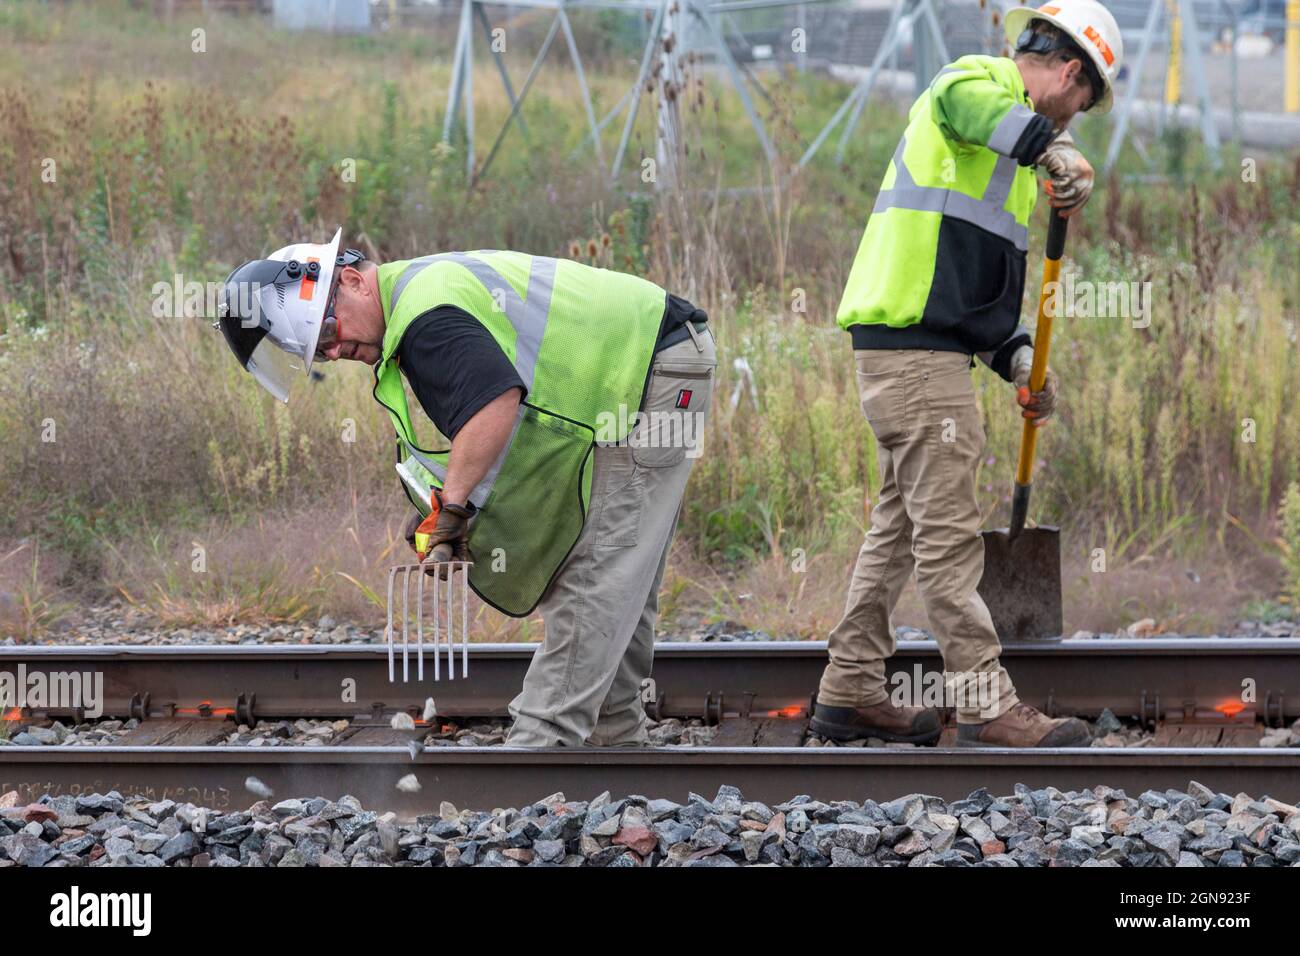 Pontiac, Michigan - Ein Eisenbahnerhaltungsteam arbeitet auf den Gleisen der CN Railroad und reinigt Trümmer, um sich auf die Reparatur der Gleise vorzubereiten. Stockfoto